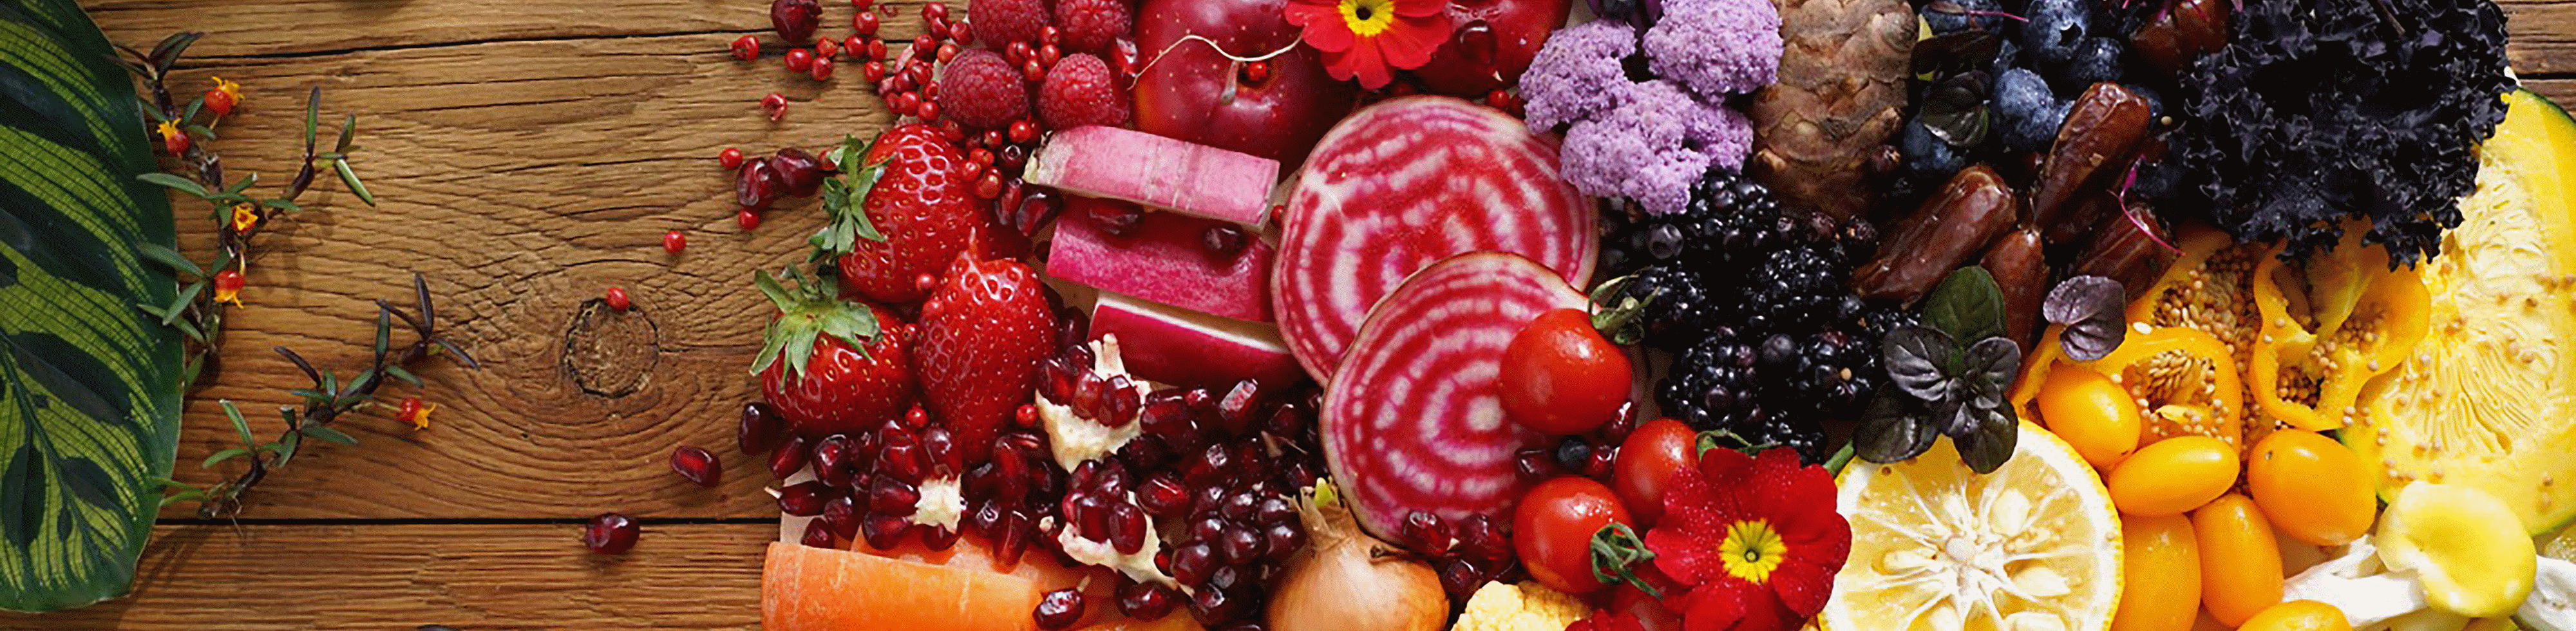 Imagem de frutas e vegetais coloridos tirada com esta lente com alta resolução em toda a imagem